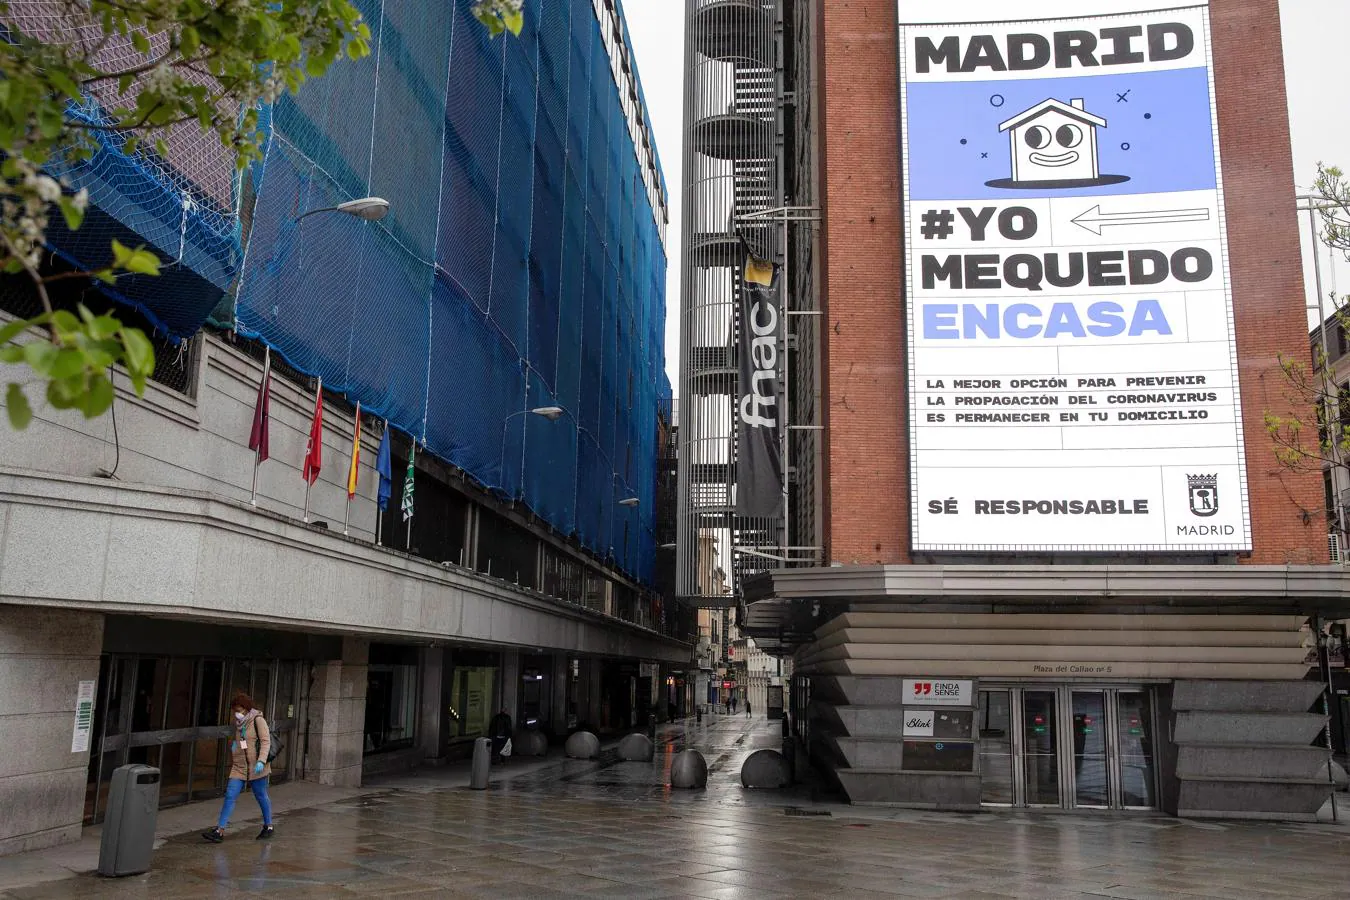 Callao. Calles desiertas en la plaza de Callao (Madrid) dan la razón a la enorme pancarta colgada en la FNAC:  #Yo me quedo en casa